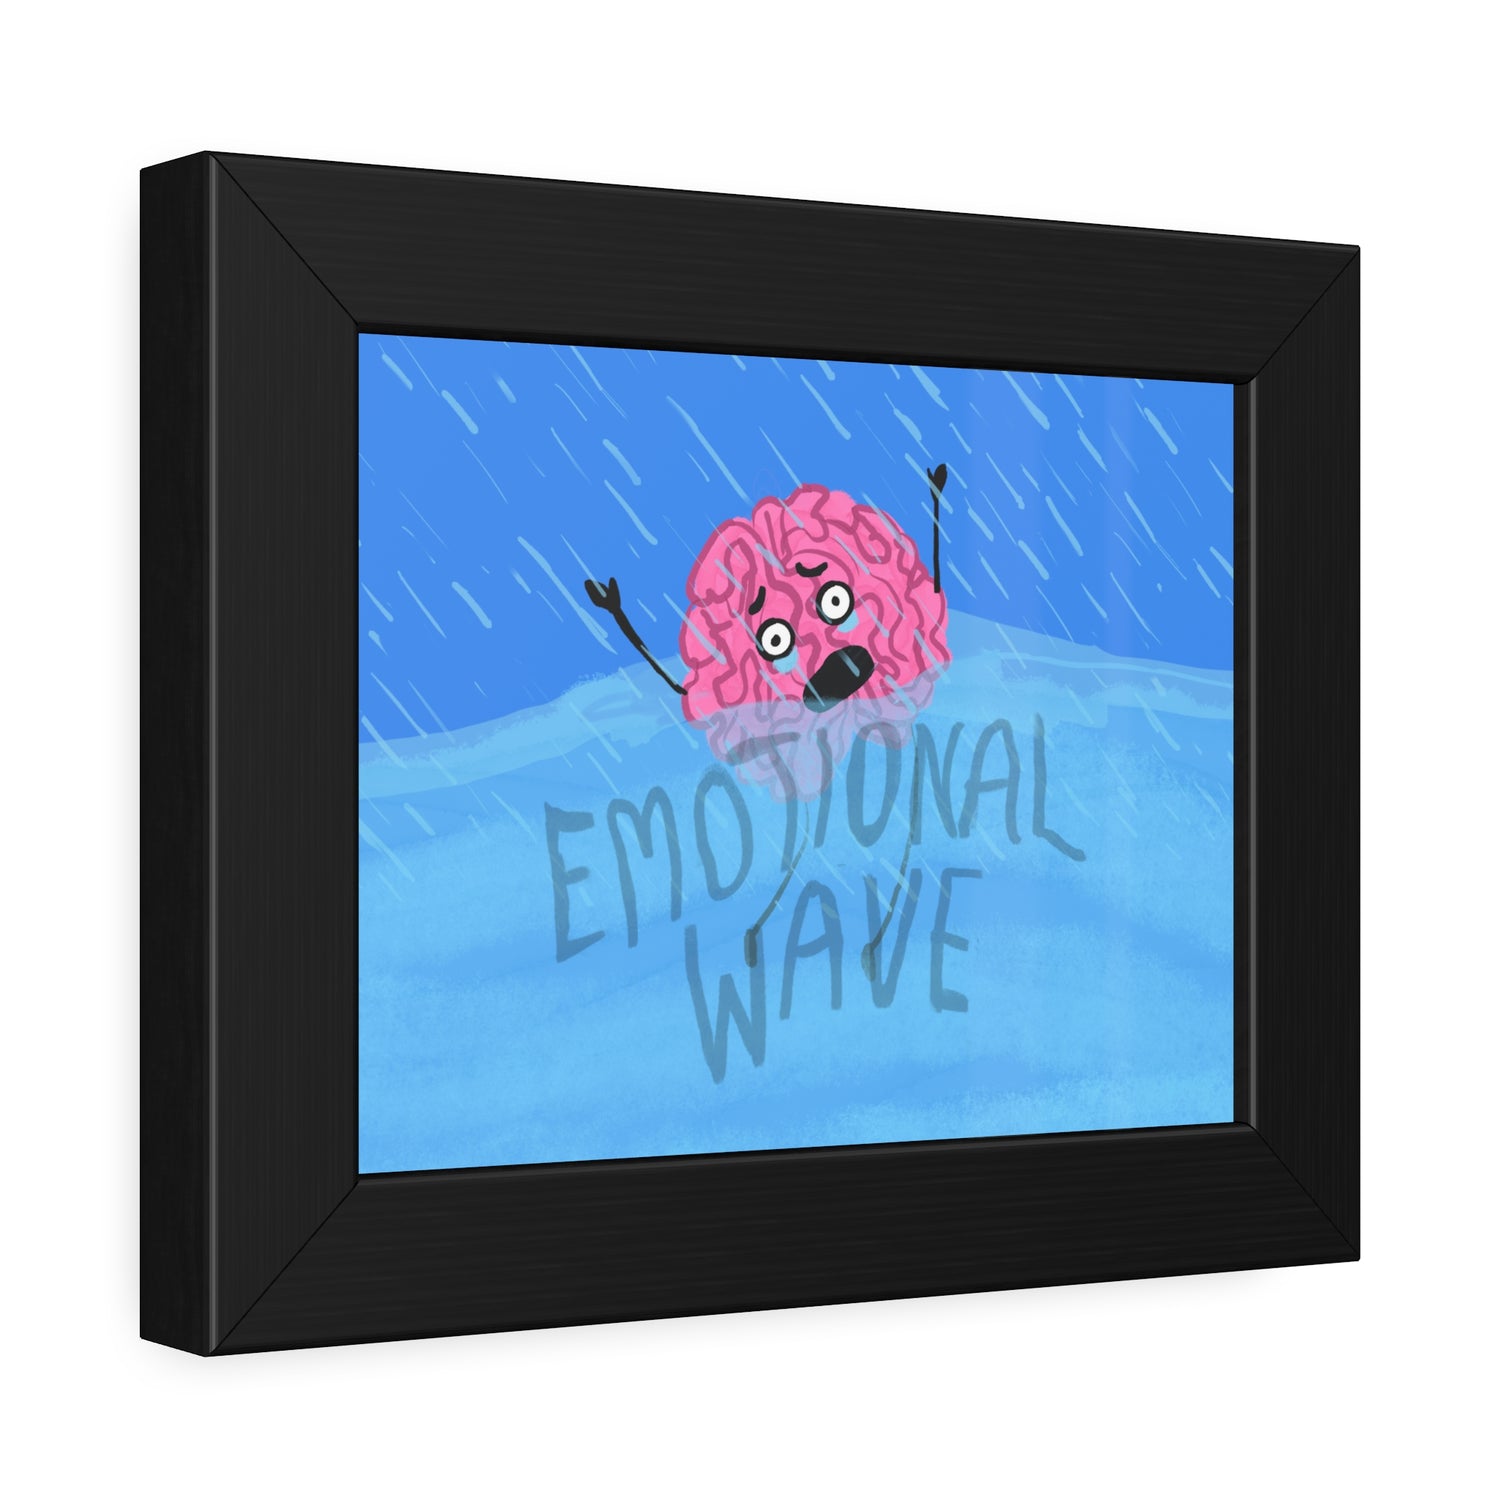 Brainey (Emotional Wave) Framed Paper Poster